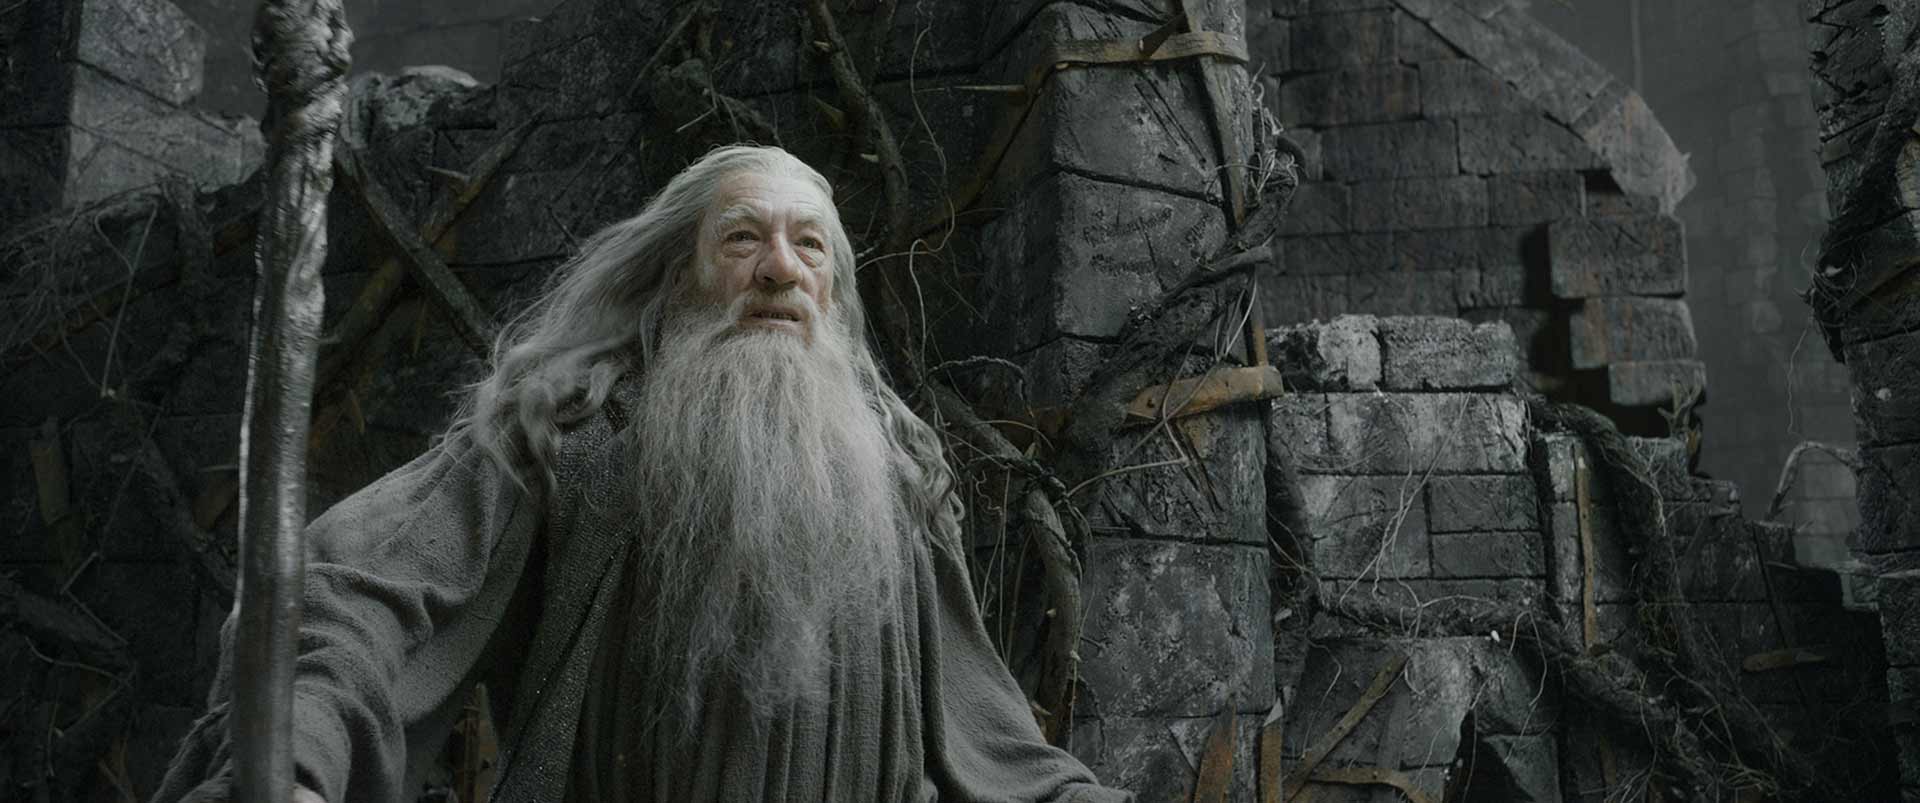 Farkann — Lei e Orgulho | Gandalf the white, Lord of the rings, Gandalf